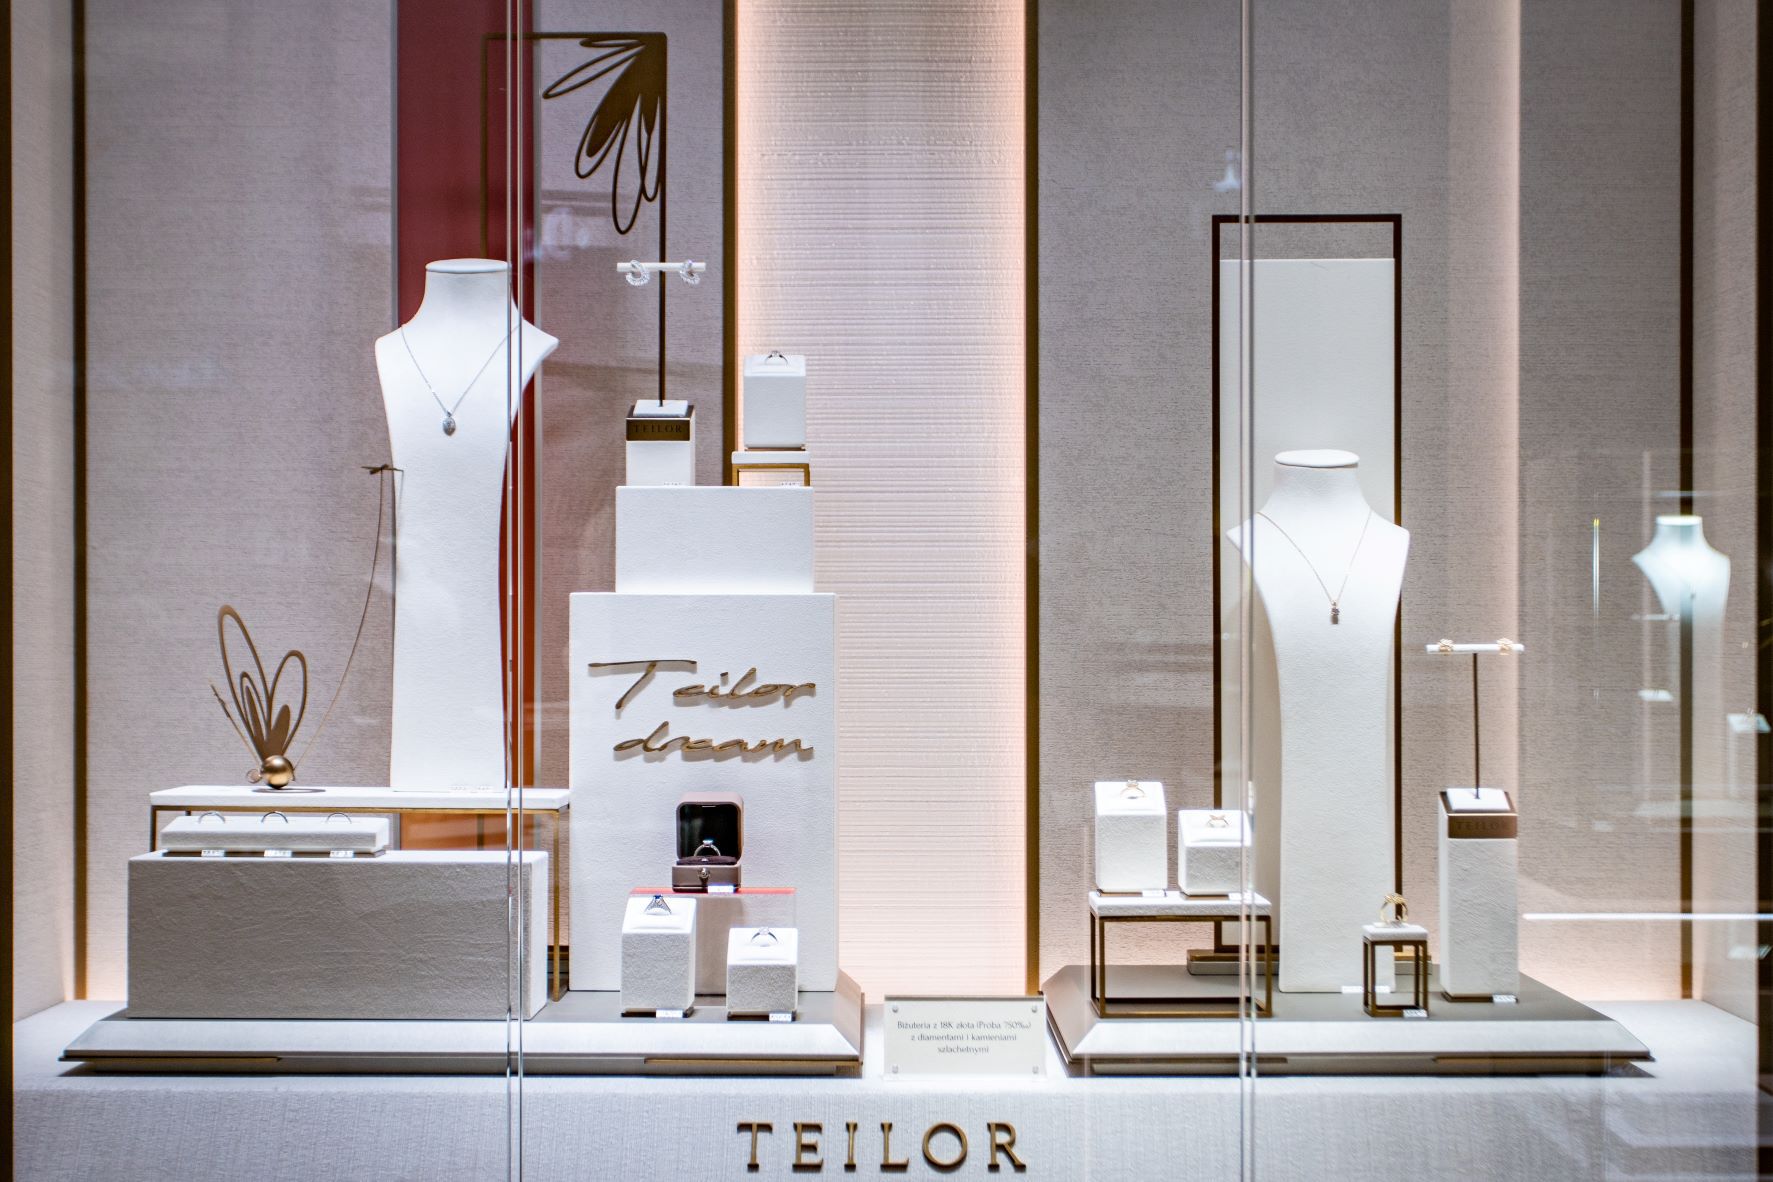 Lanţul de bijuterii TEILOR deschide al 5-lea magazin în Polonia, principala piaţă externă pentru companie, şi ajunge la 63 de unităţi în regiunea Europa Centrală şi de Est. De la începutul anului, TEILOR a deschis şapte magazine, dintre care trei în România